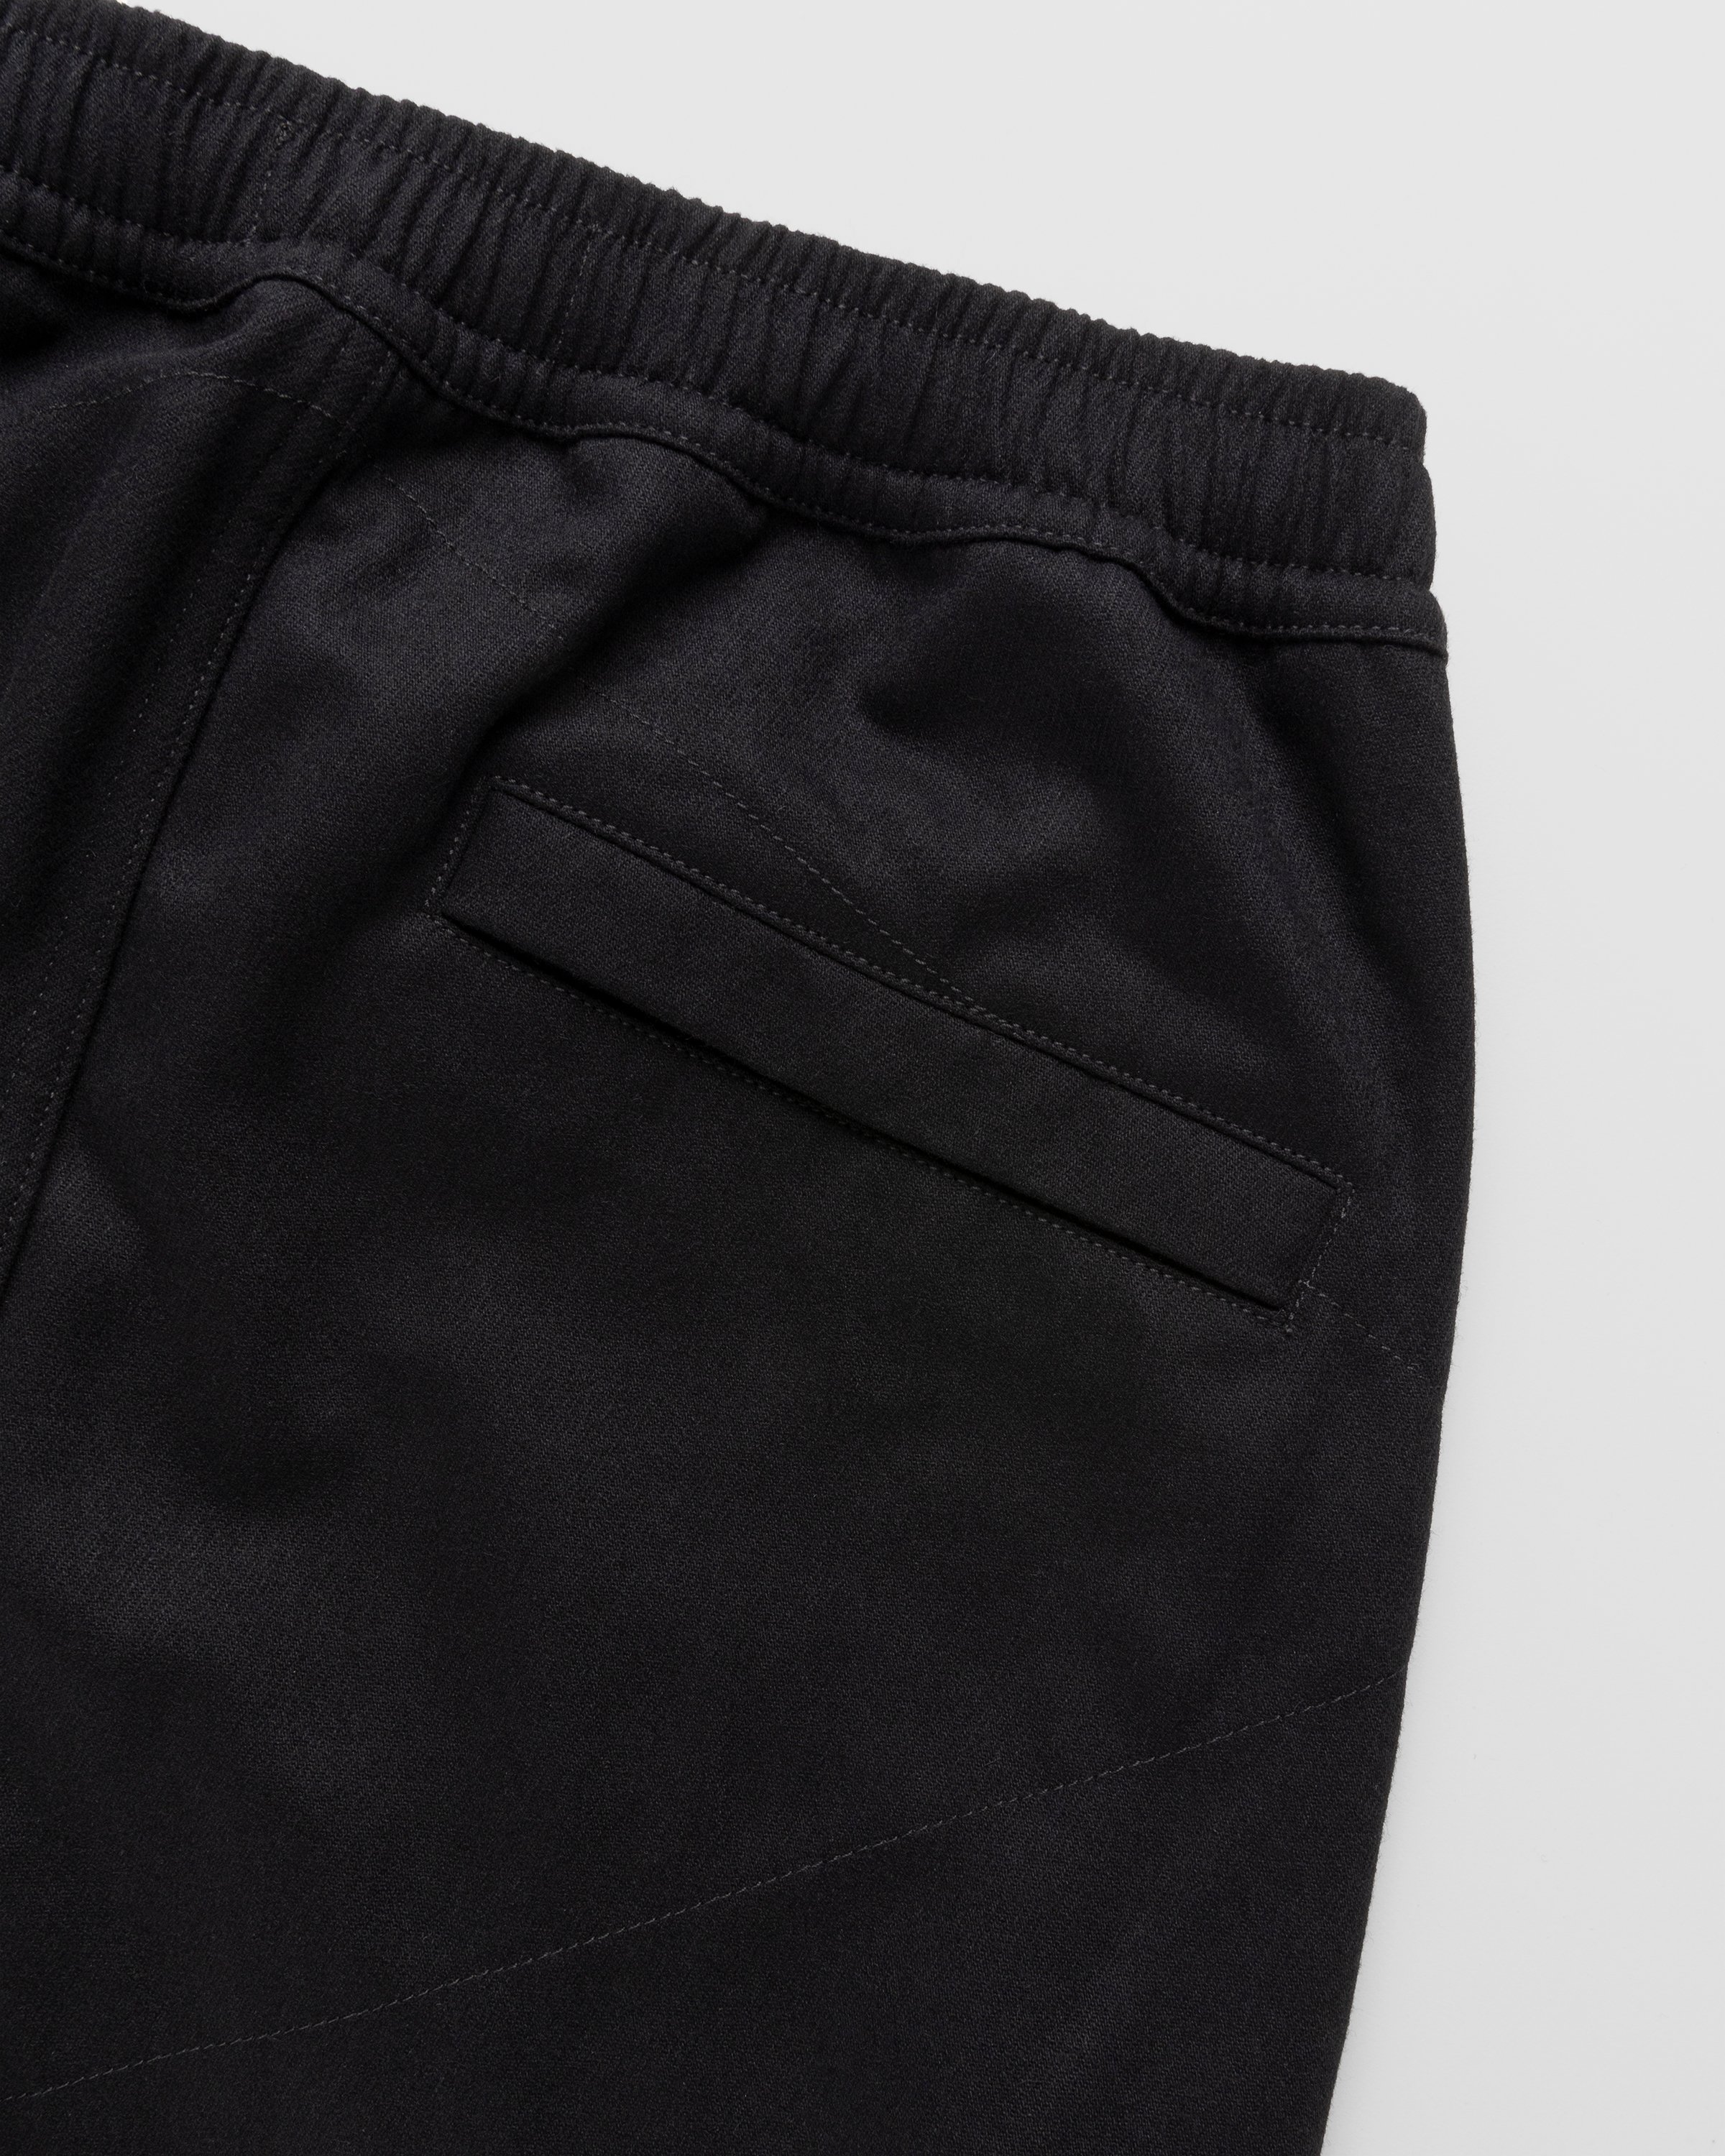 Stone Island - Wool-Nylon Cargo Pants Black - Clothing - Black - Image 4